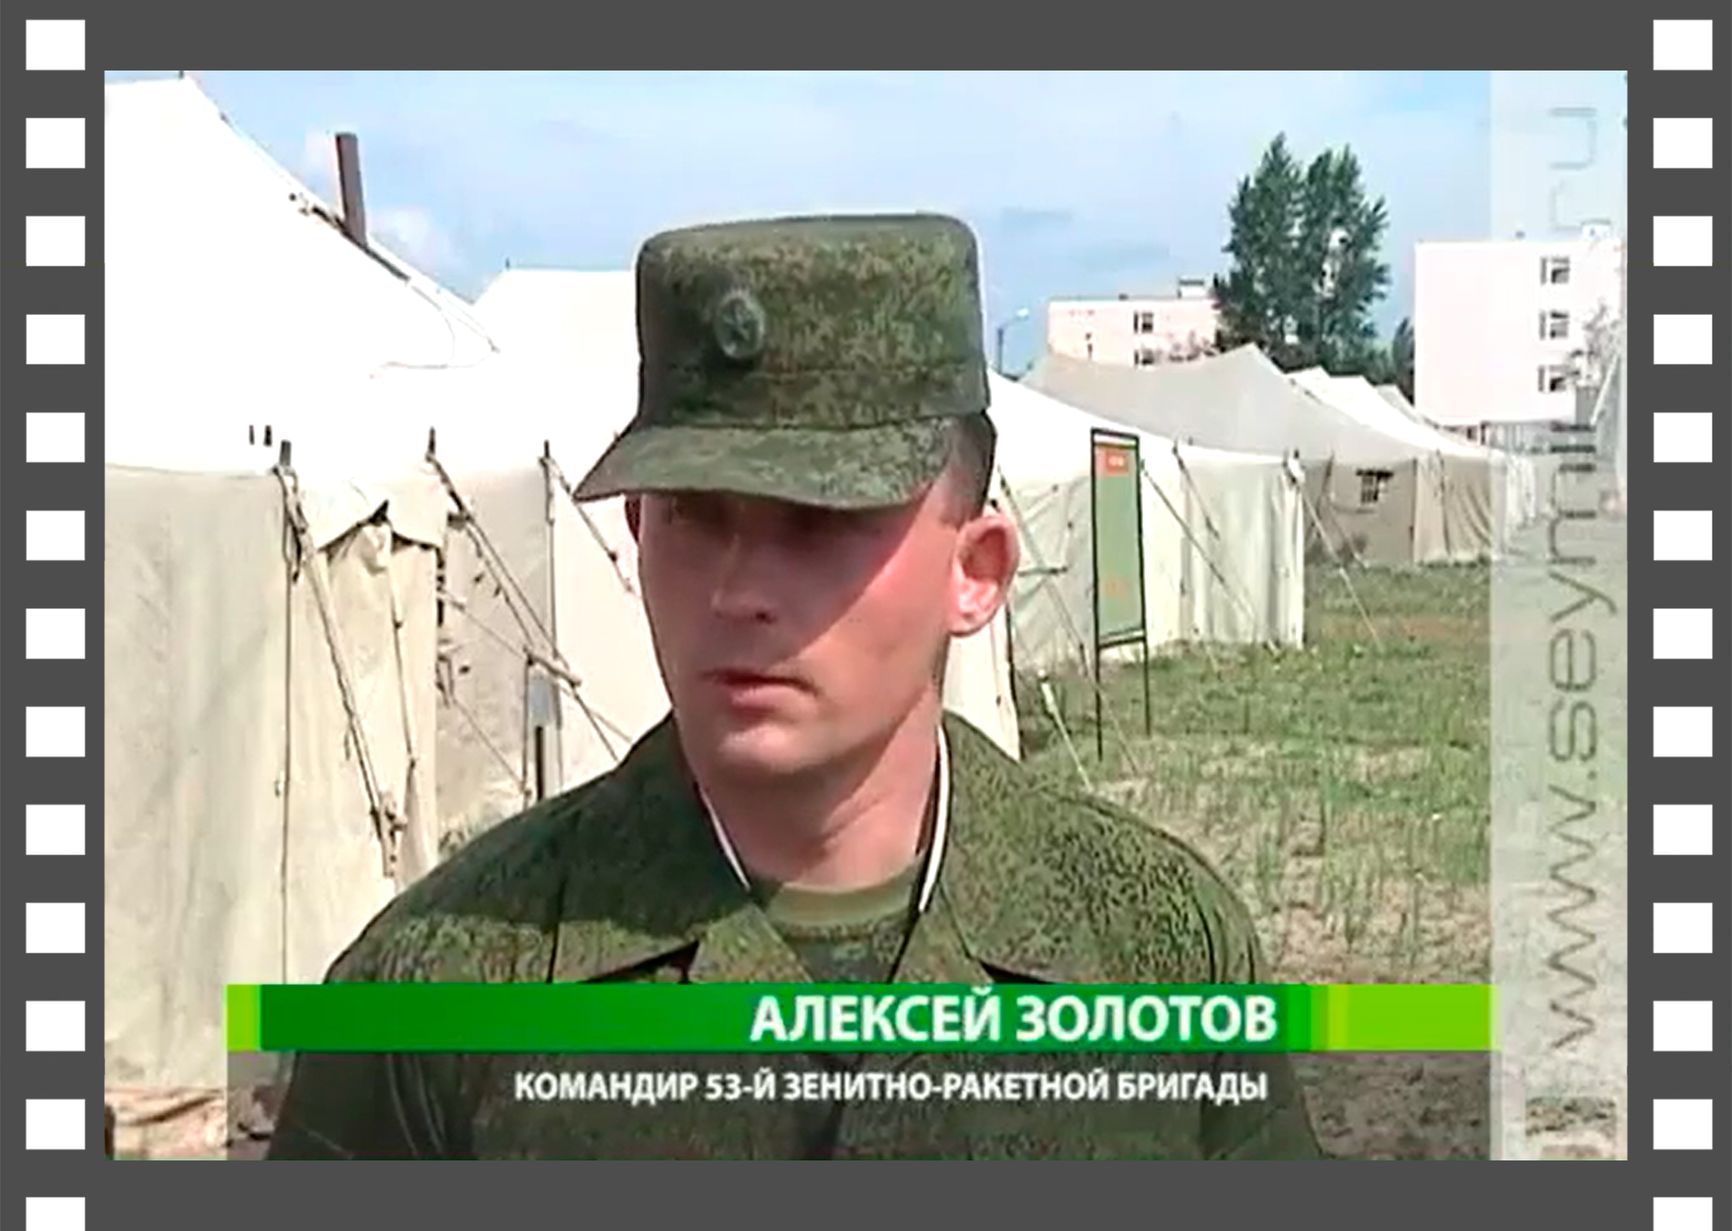 Командир 53-й зенитно-ракетной бригады Алексей Золотов дает интервью курской телерадиокомпании «Сейм» 16 июля 2012 г.